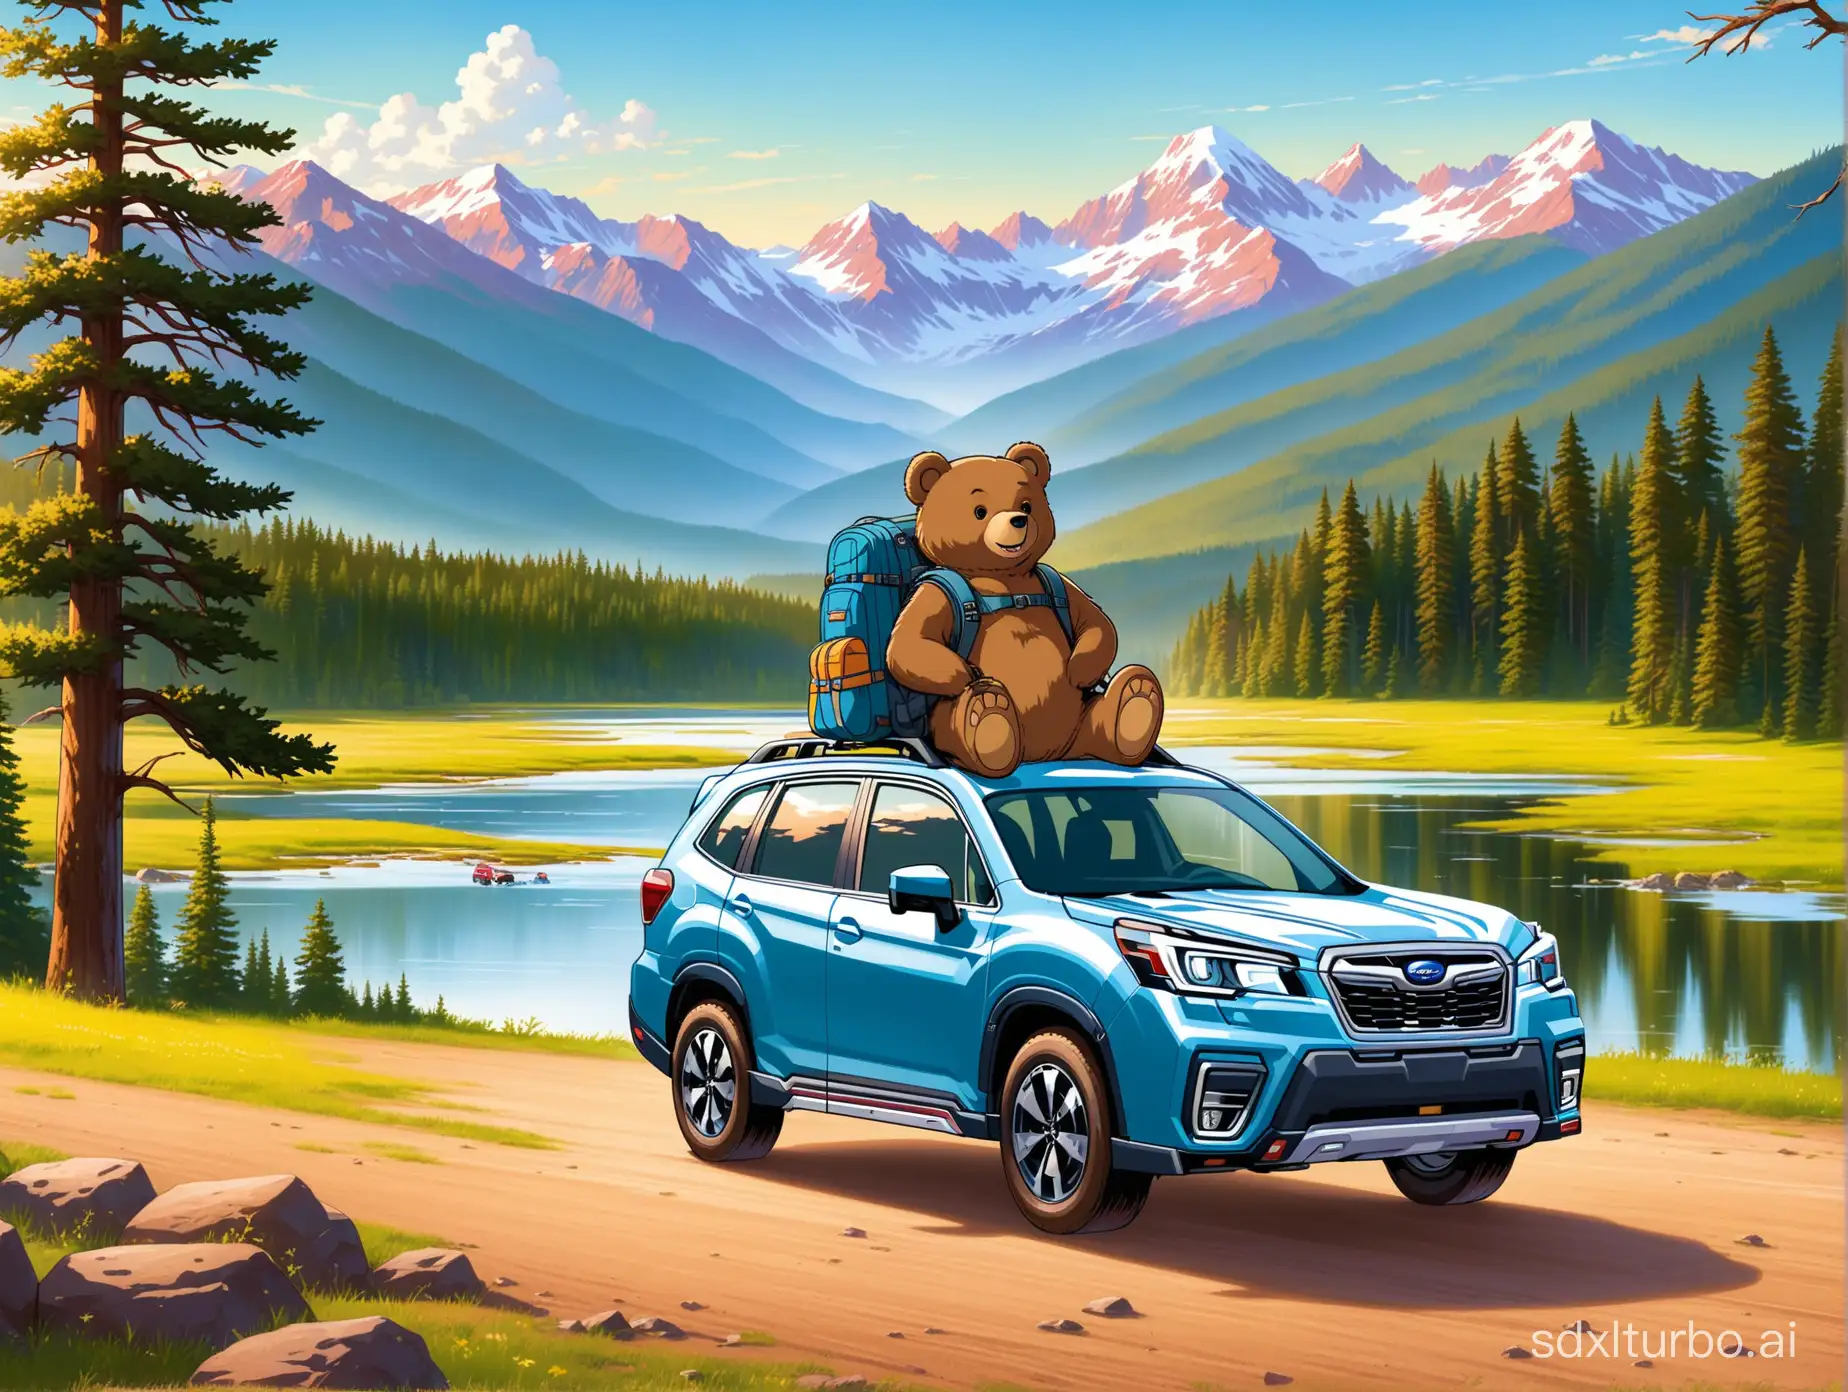 logo de un señor oso con mochila y equipo de viaje atras un carro subaru forester y de fondo un paisaje de estados unidos que refleje la aventura 